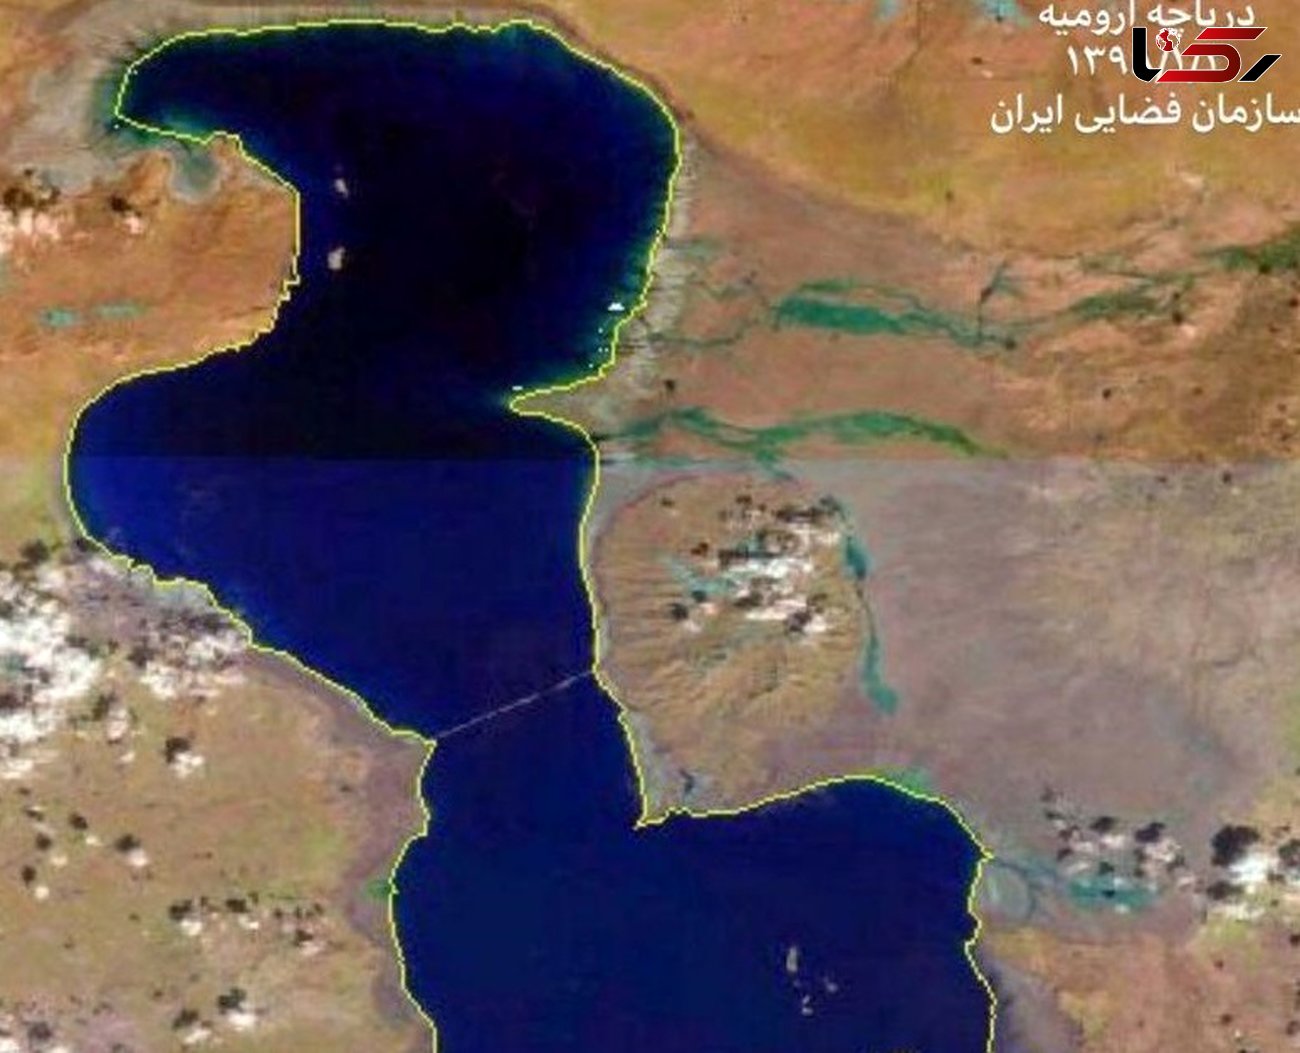 تصویر ماهواره ای حیرت آور از دریاچه ارومیه + عکس 